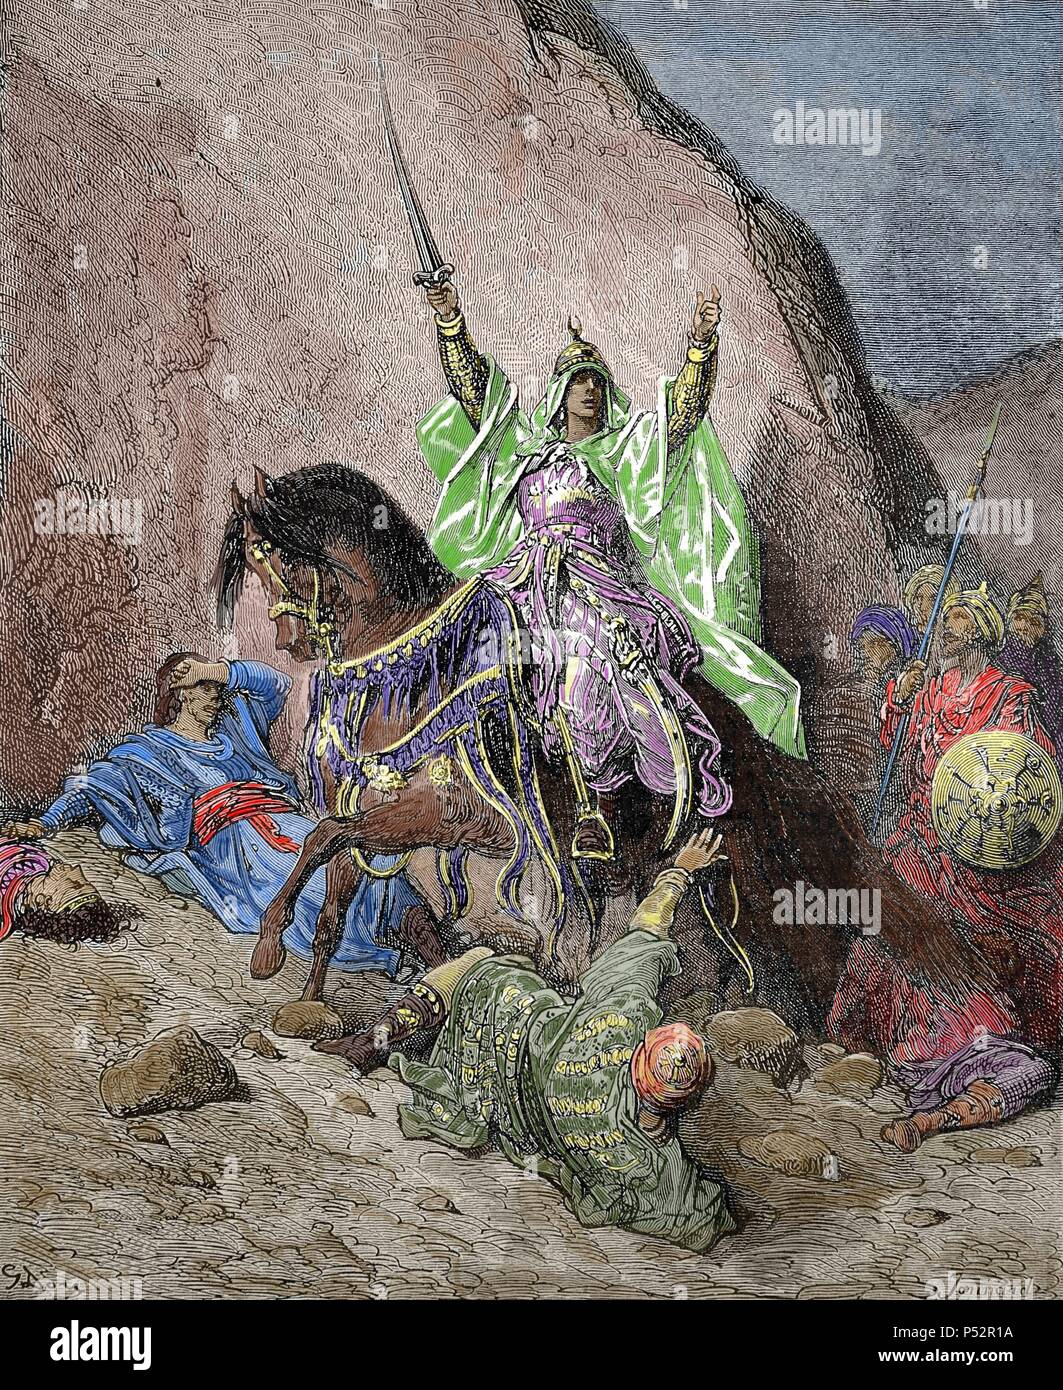 Saladino Turk (1138-1193). Primo Sultano d Egitto e Siria. Fondò la dinastia ayyubide. Xix secolo raffigurazione di una vittoriosa Saladino, da Gustave Dore. Incisione colorata. Foto Stock